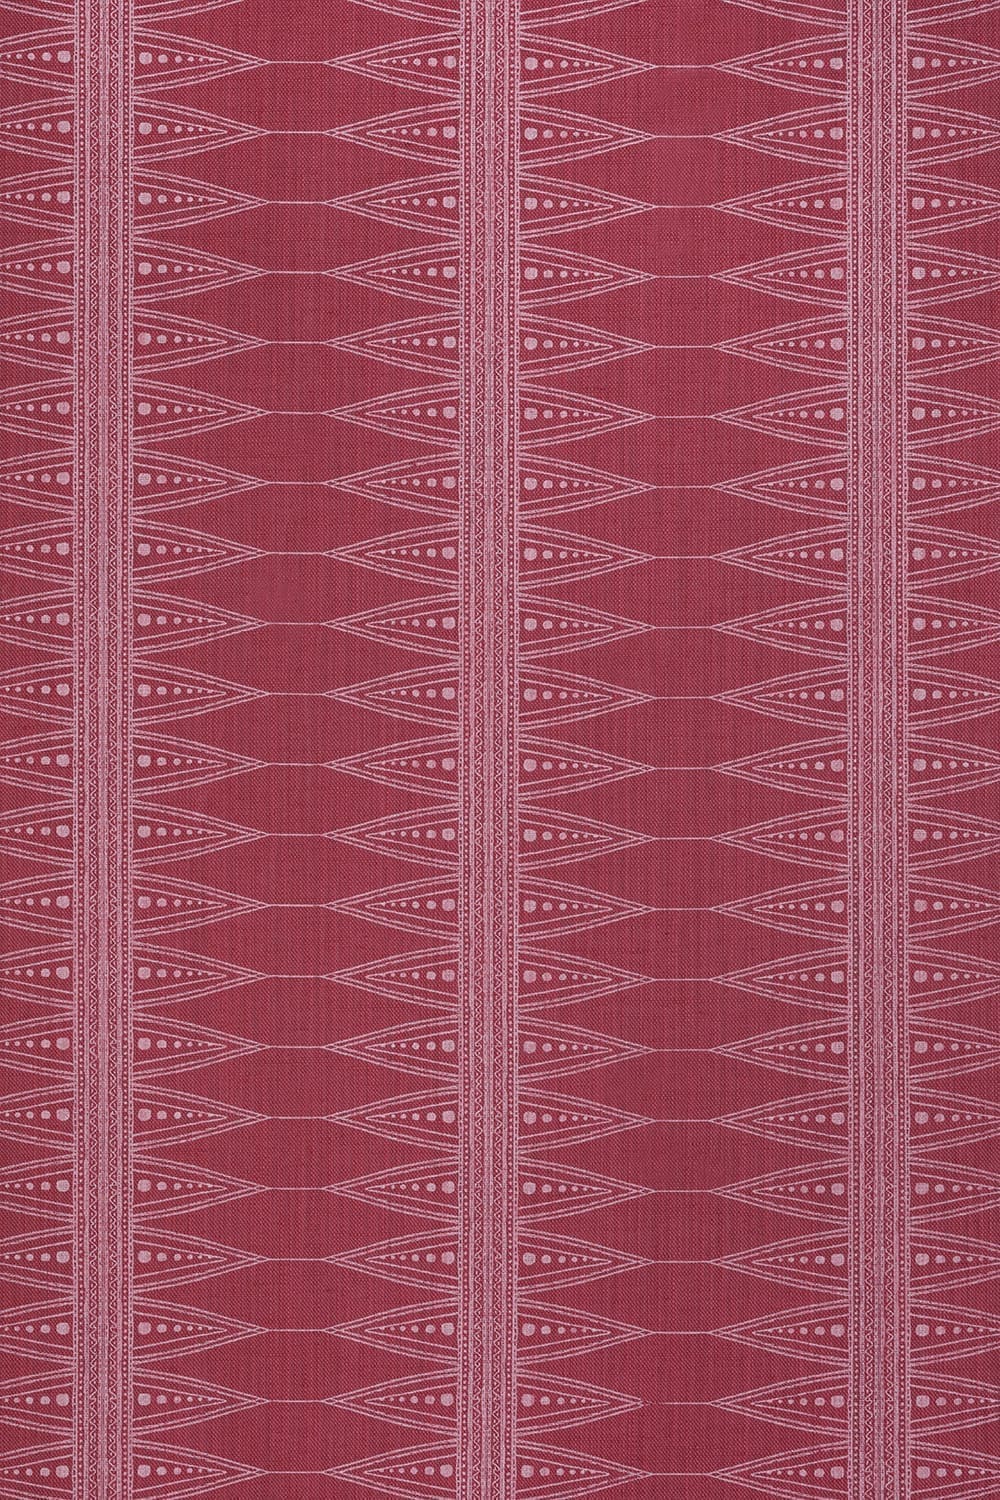 Indian Stripe Fabric